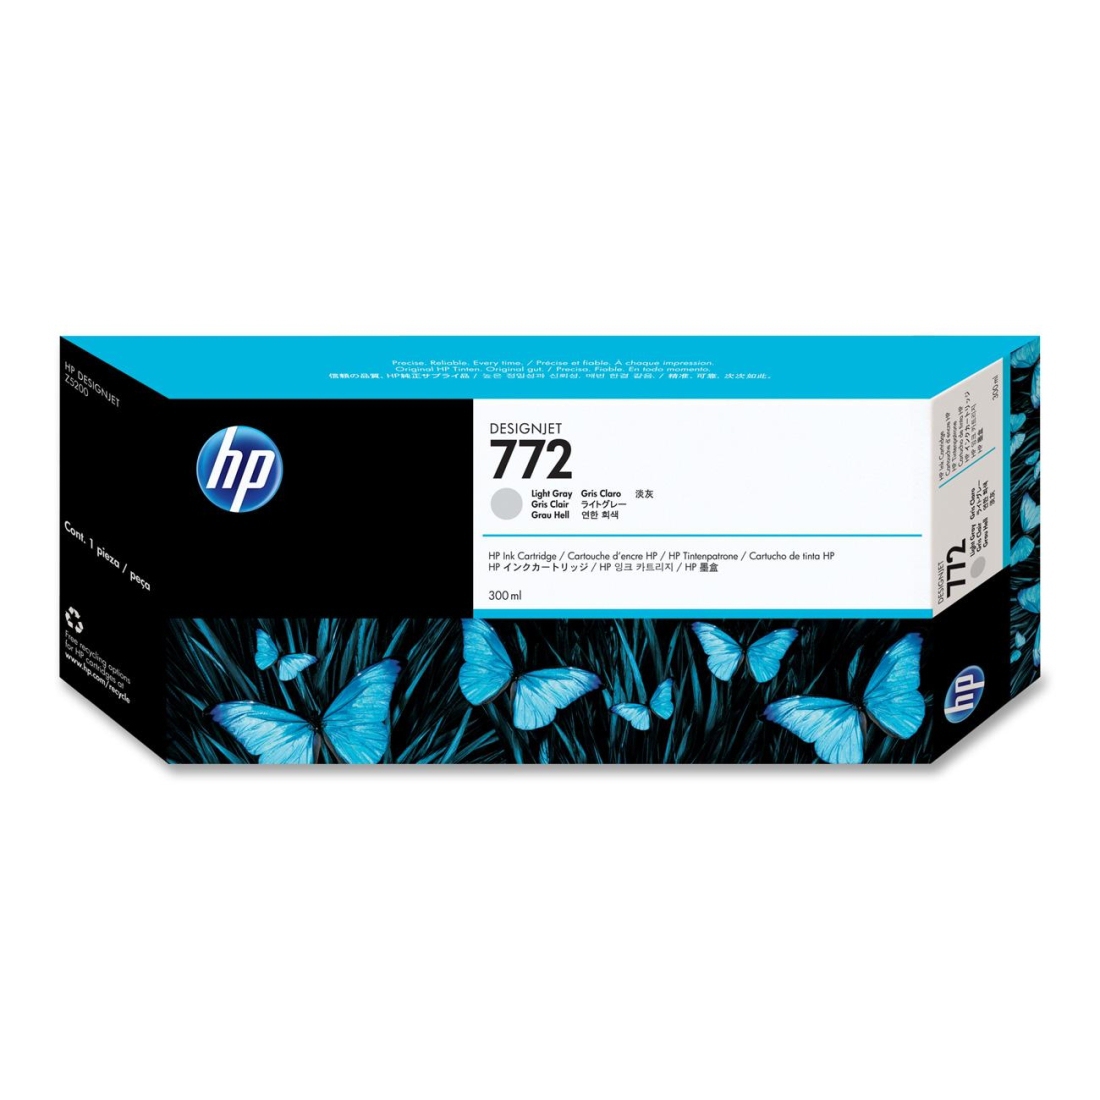 HP 772 Genuine HP Inkjet